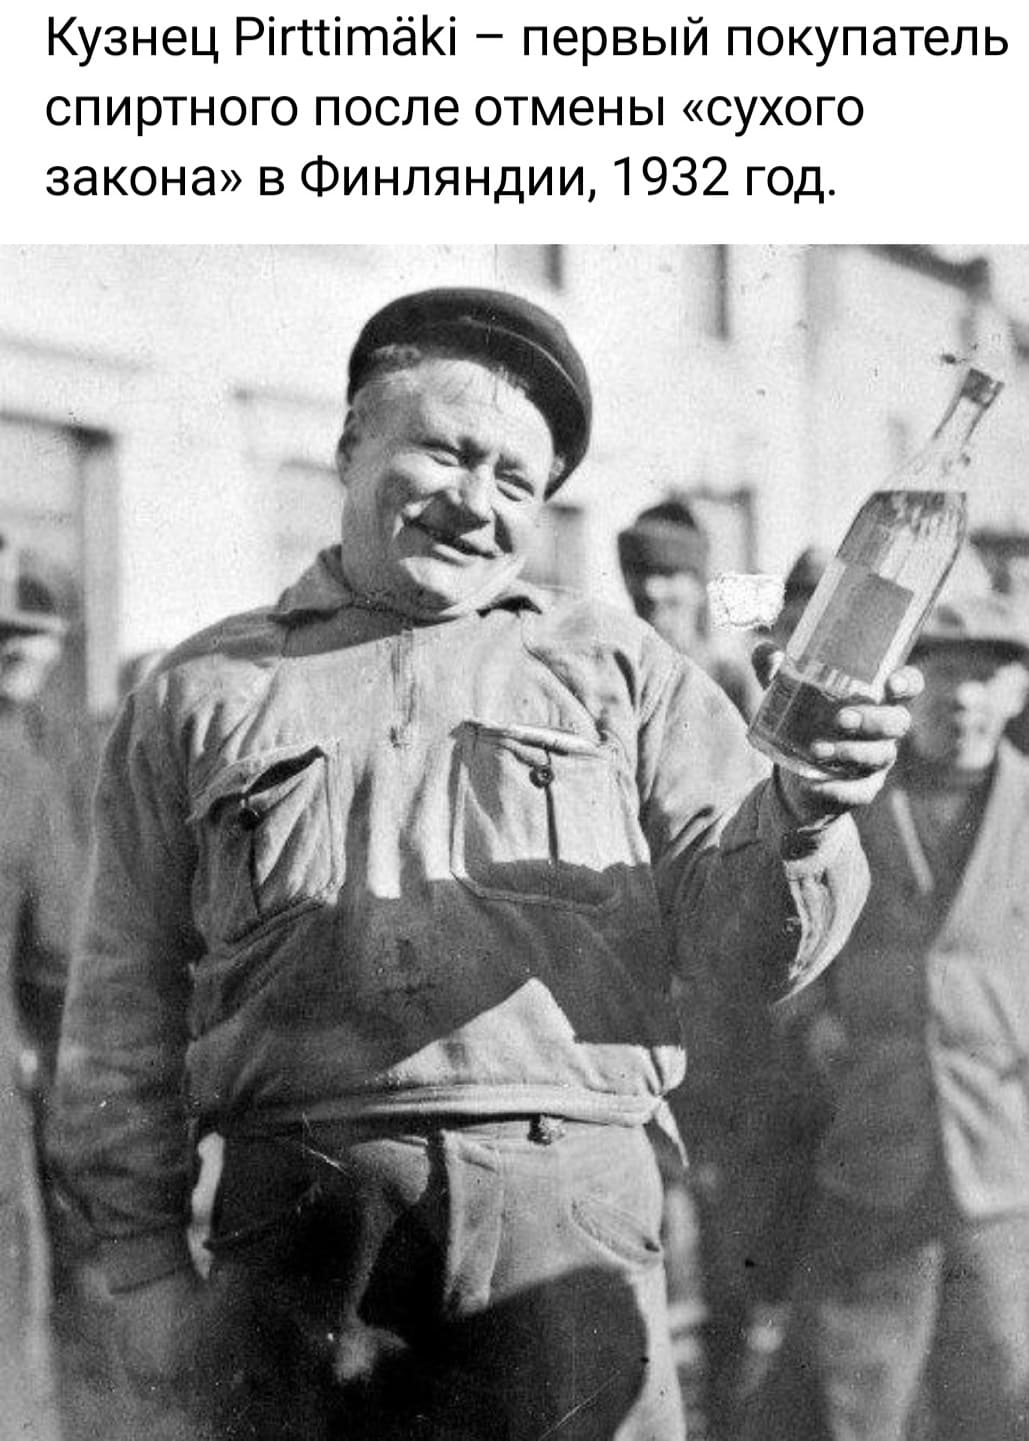 Кузнец Pirttimaki — первый покупатель спиртного после отмены «сухого закона» в Финляндии, 1932 год.